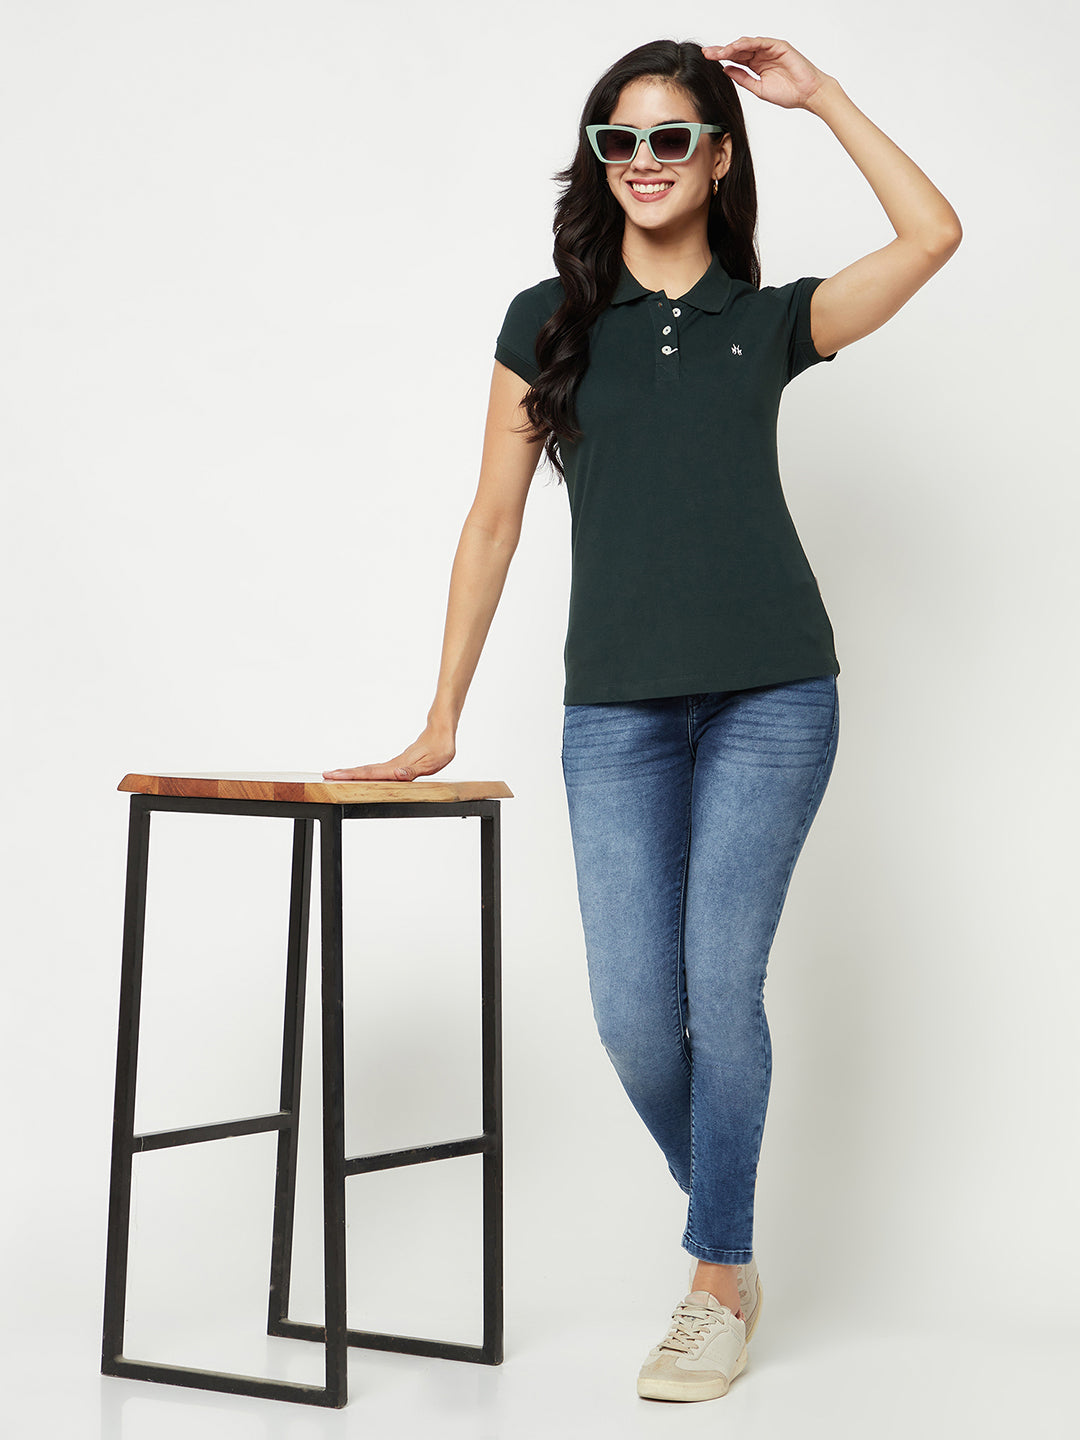 Green Cotton T-Shirt-Women T-shirts-Crimsoune Club